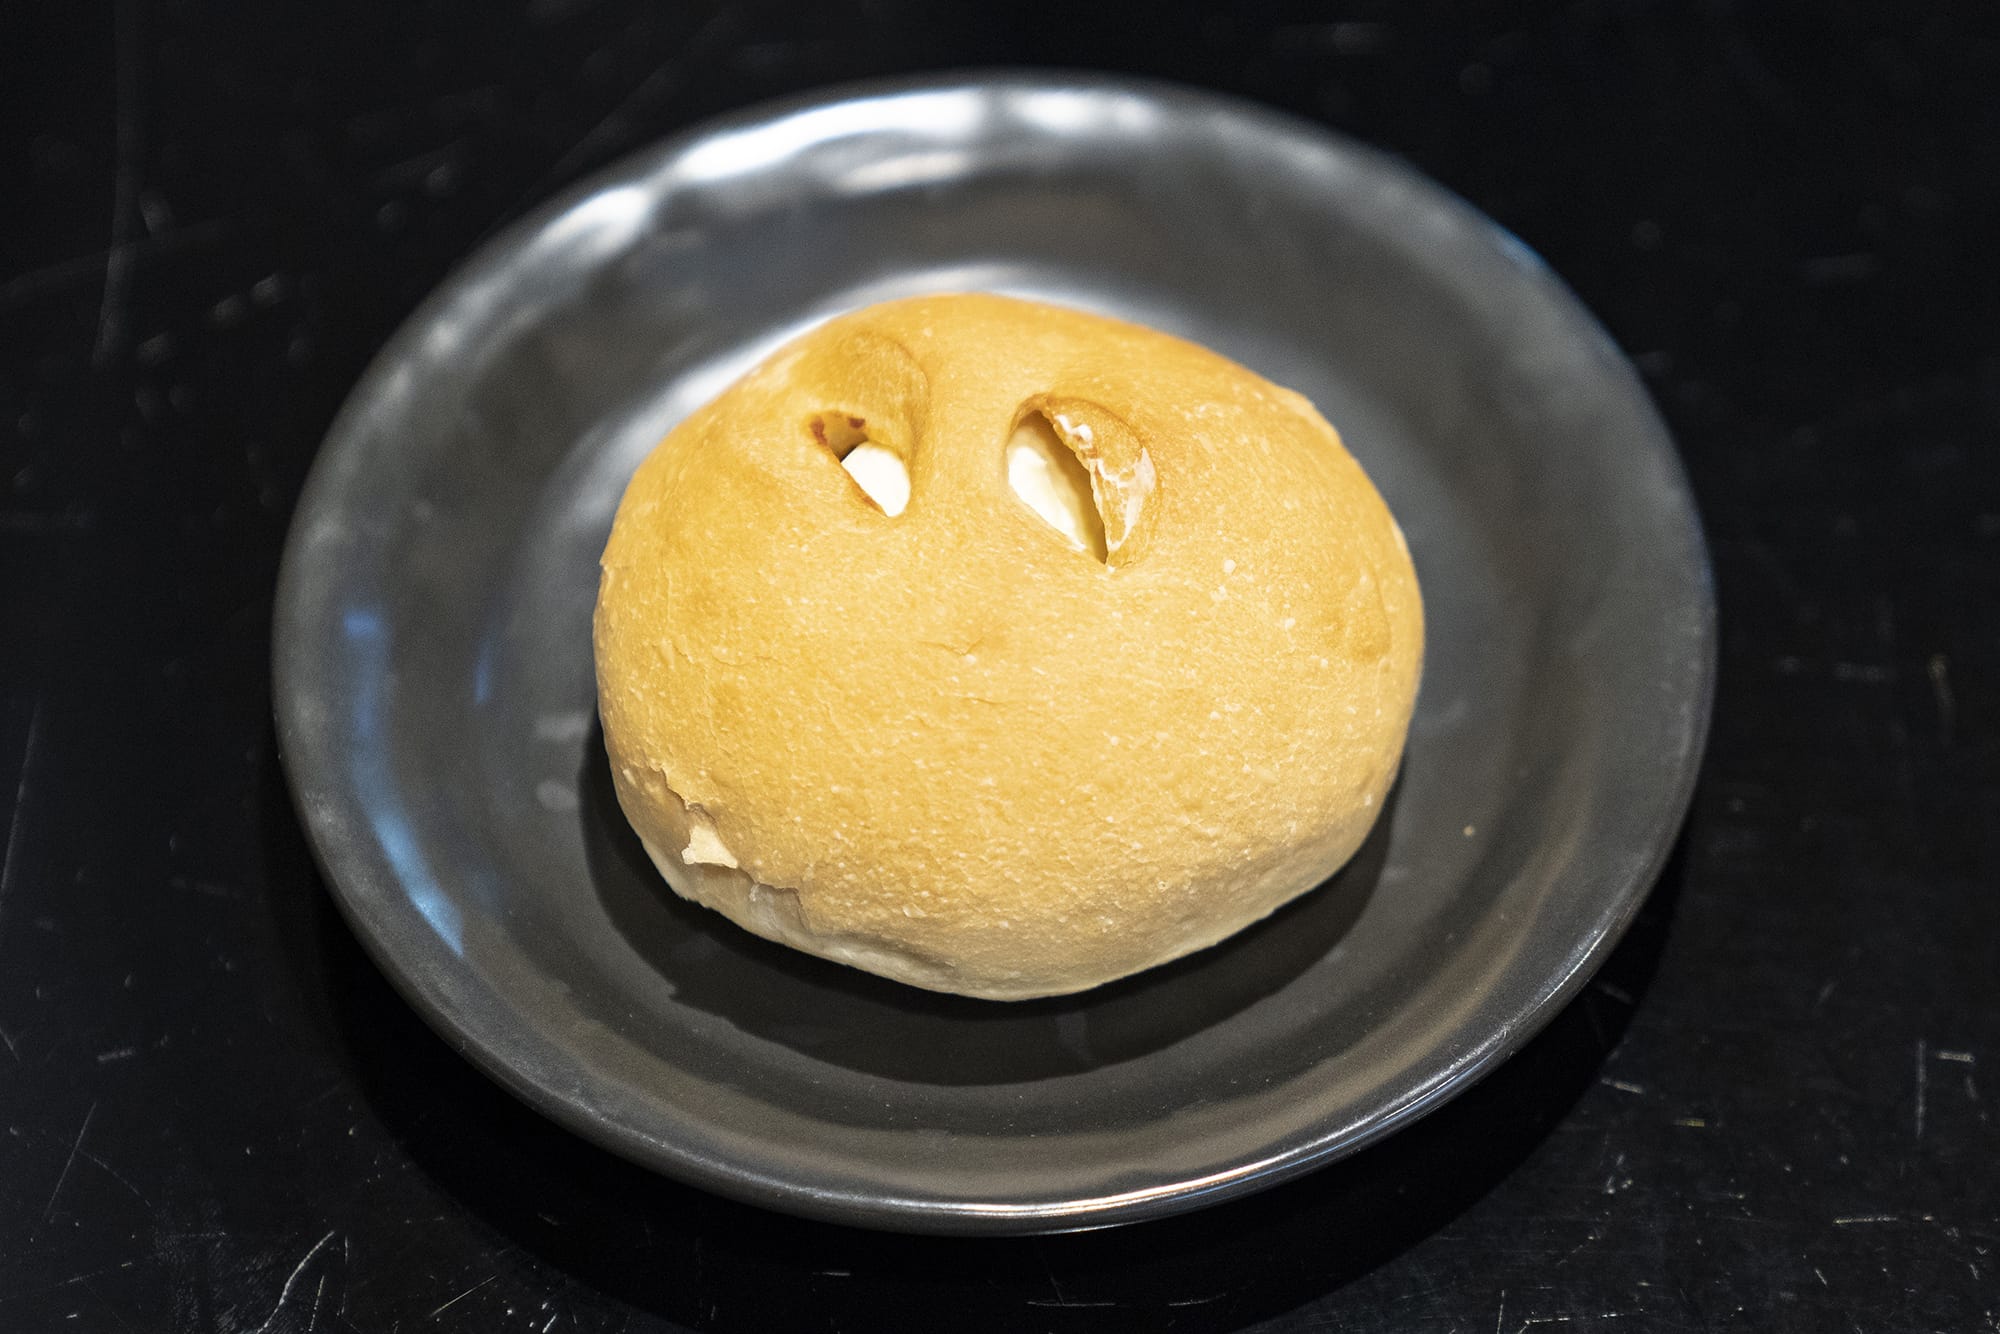 あんバター。十勝産の粒あんと北海道産のホイップバターをソフトなフランスパンで包んでいる。一つ出来上がるまでに７時間をかけている逸品だ。250円（税込み）。